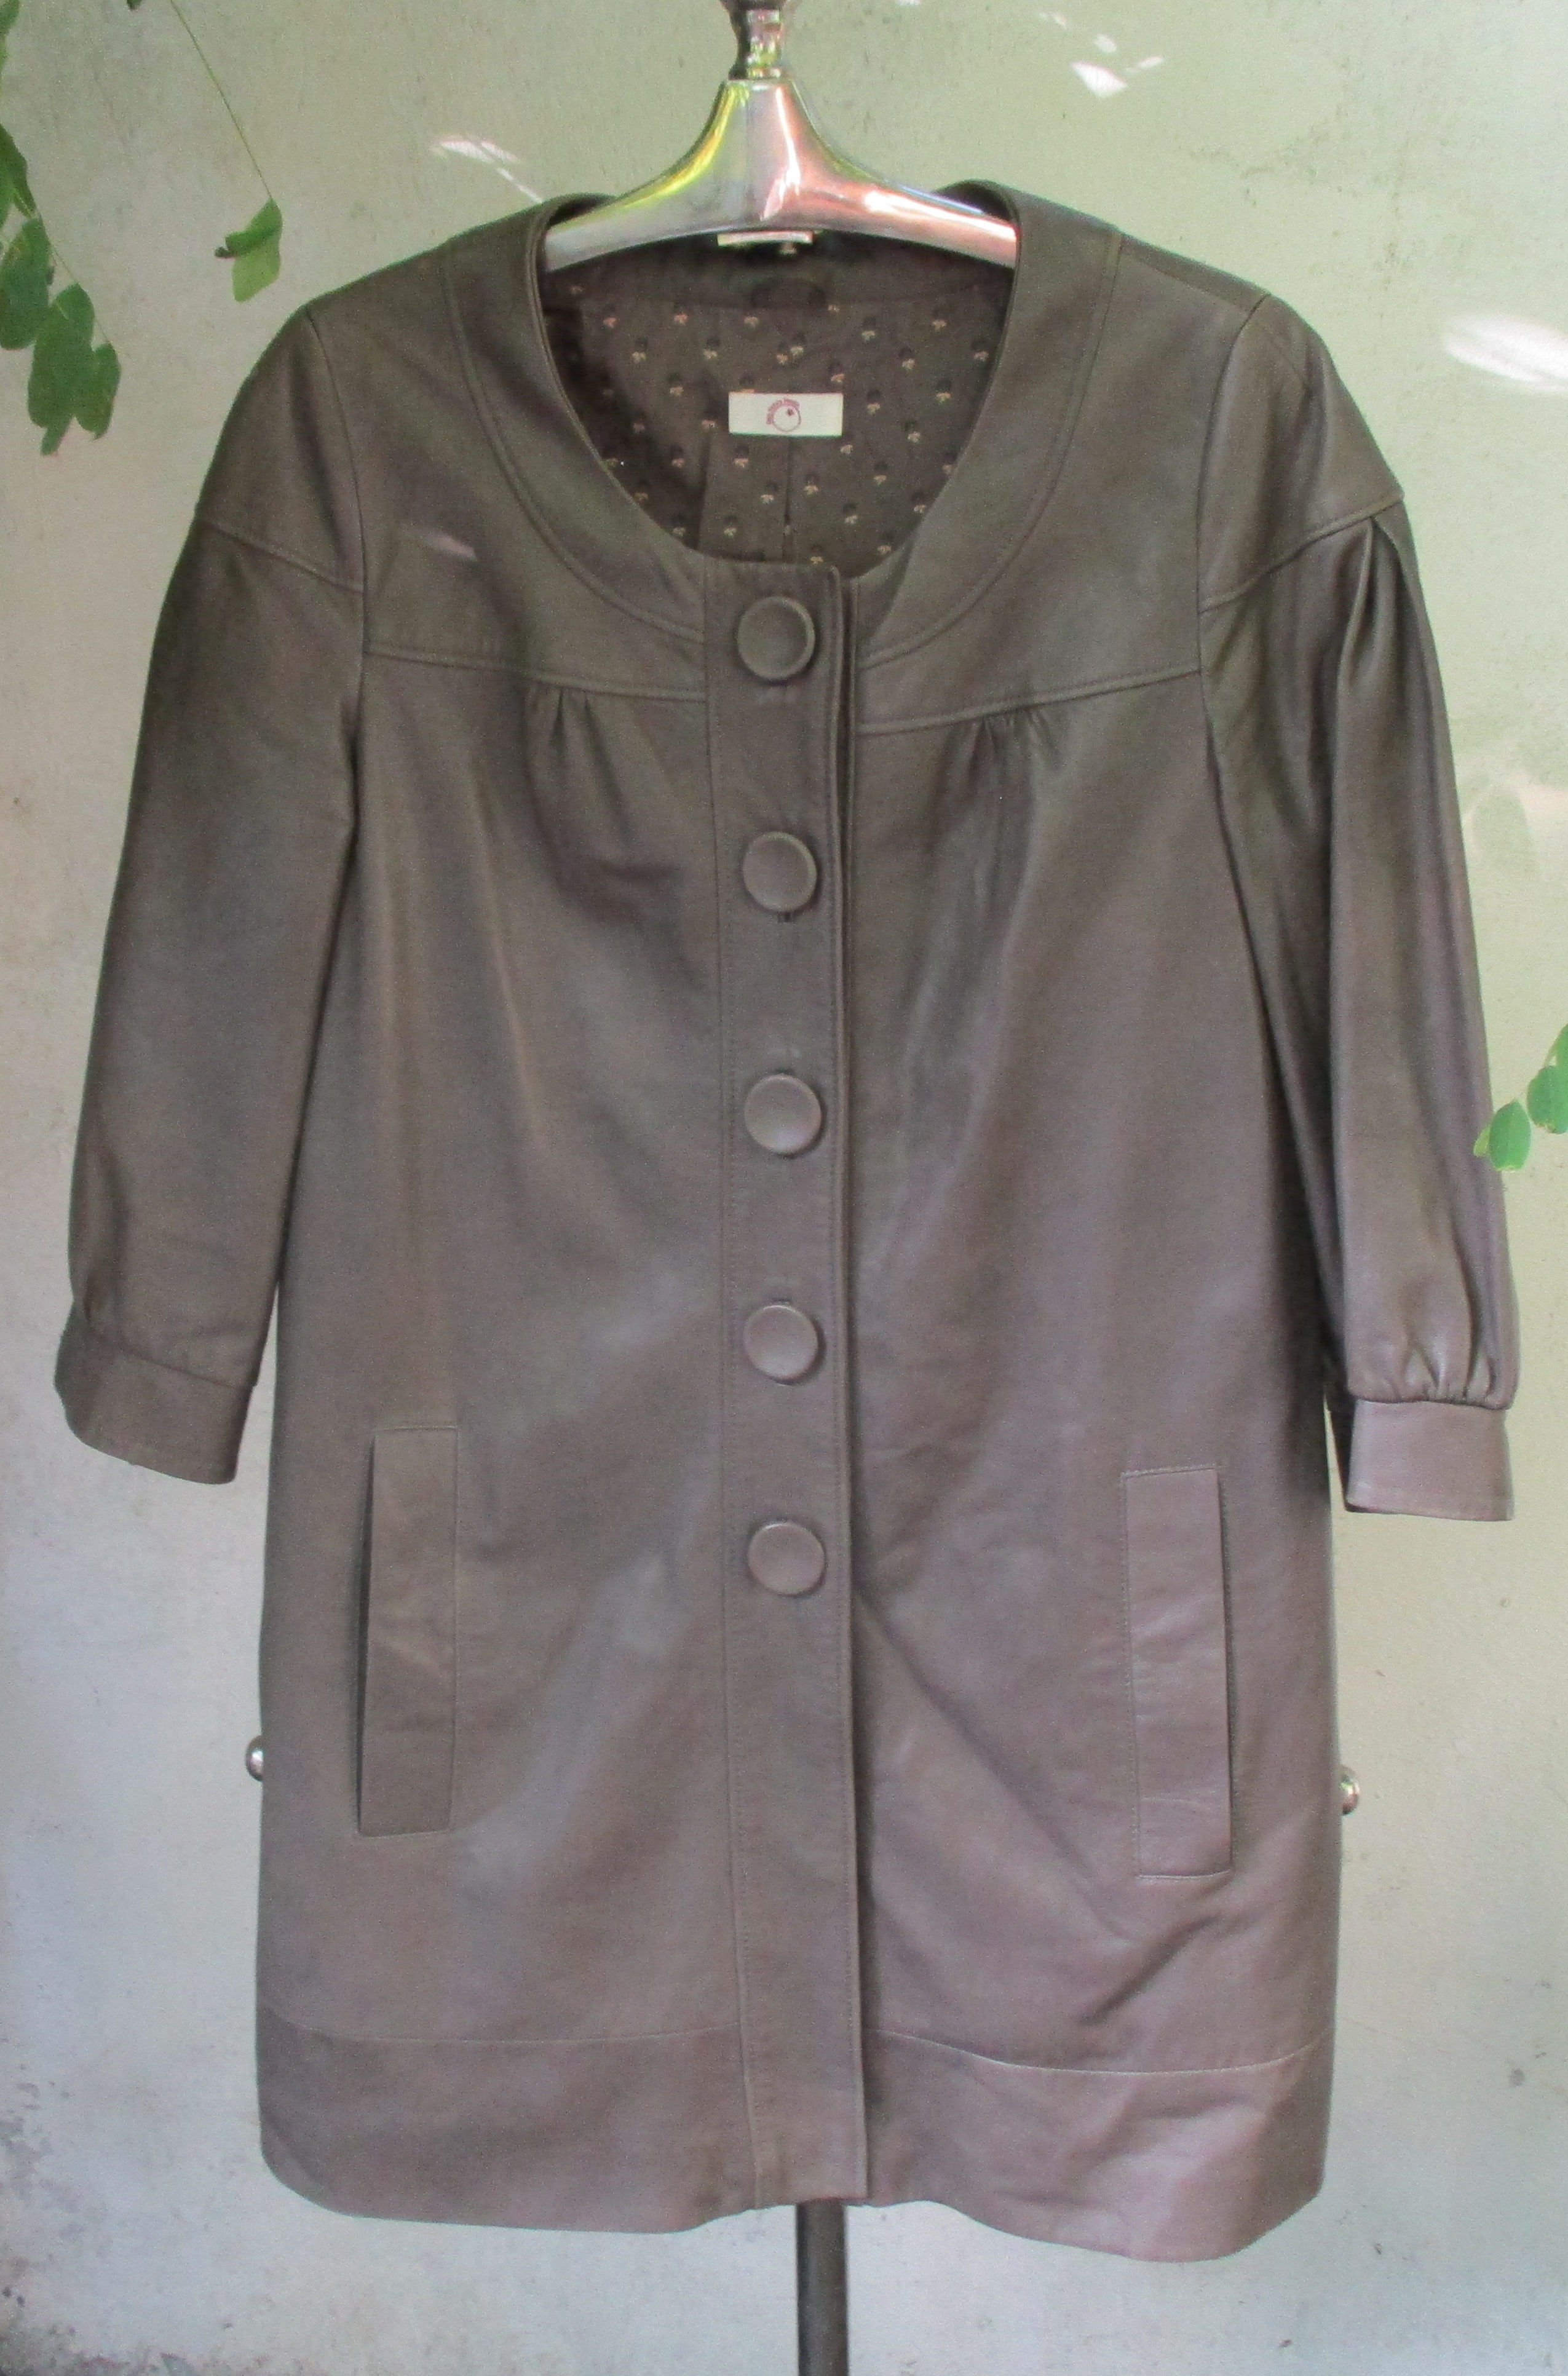 Leather coat in soft mushroom mauve coloured leather